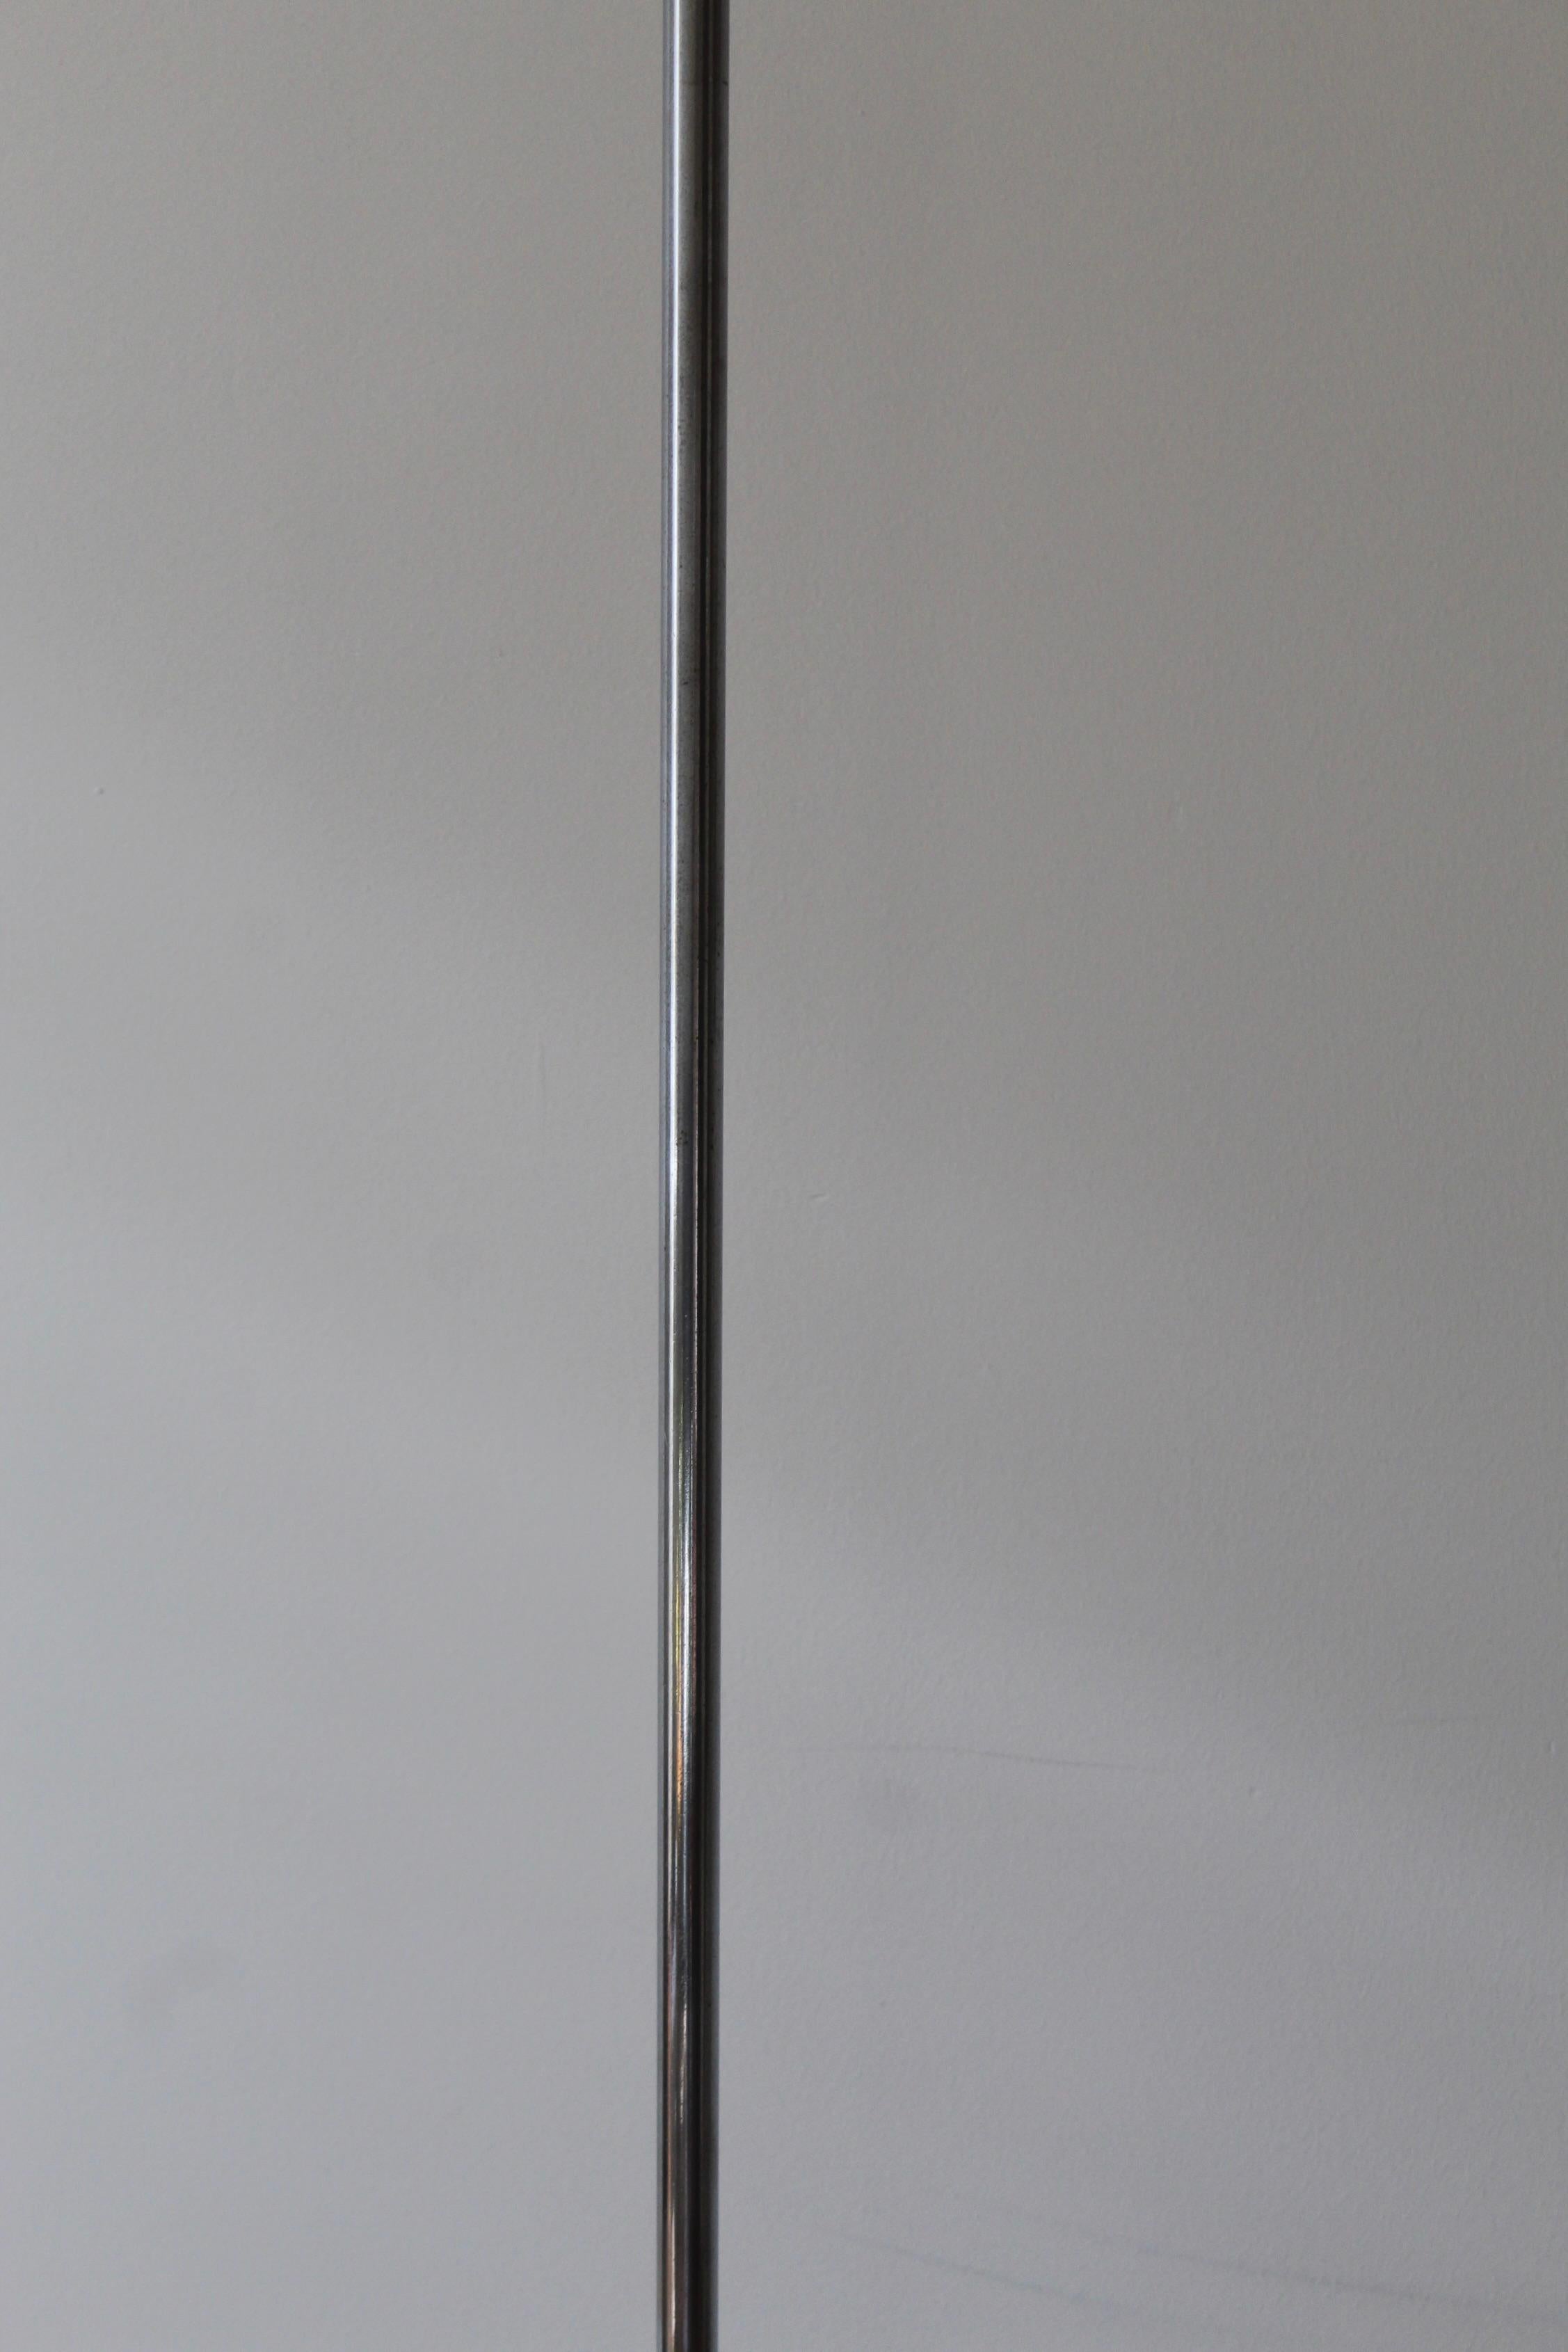 Mid-Century Modern Gino Sarfatti, Floor Lamp, Aluminum, Chrome Metal, Arteluce, Italy, 1950s For Sale